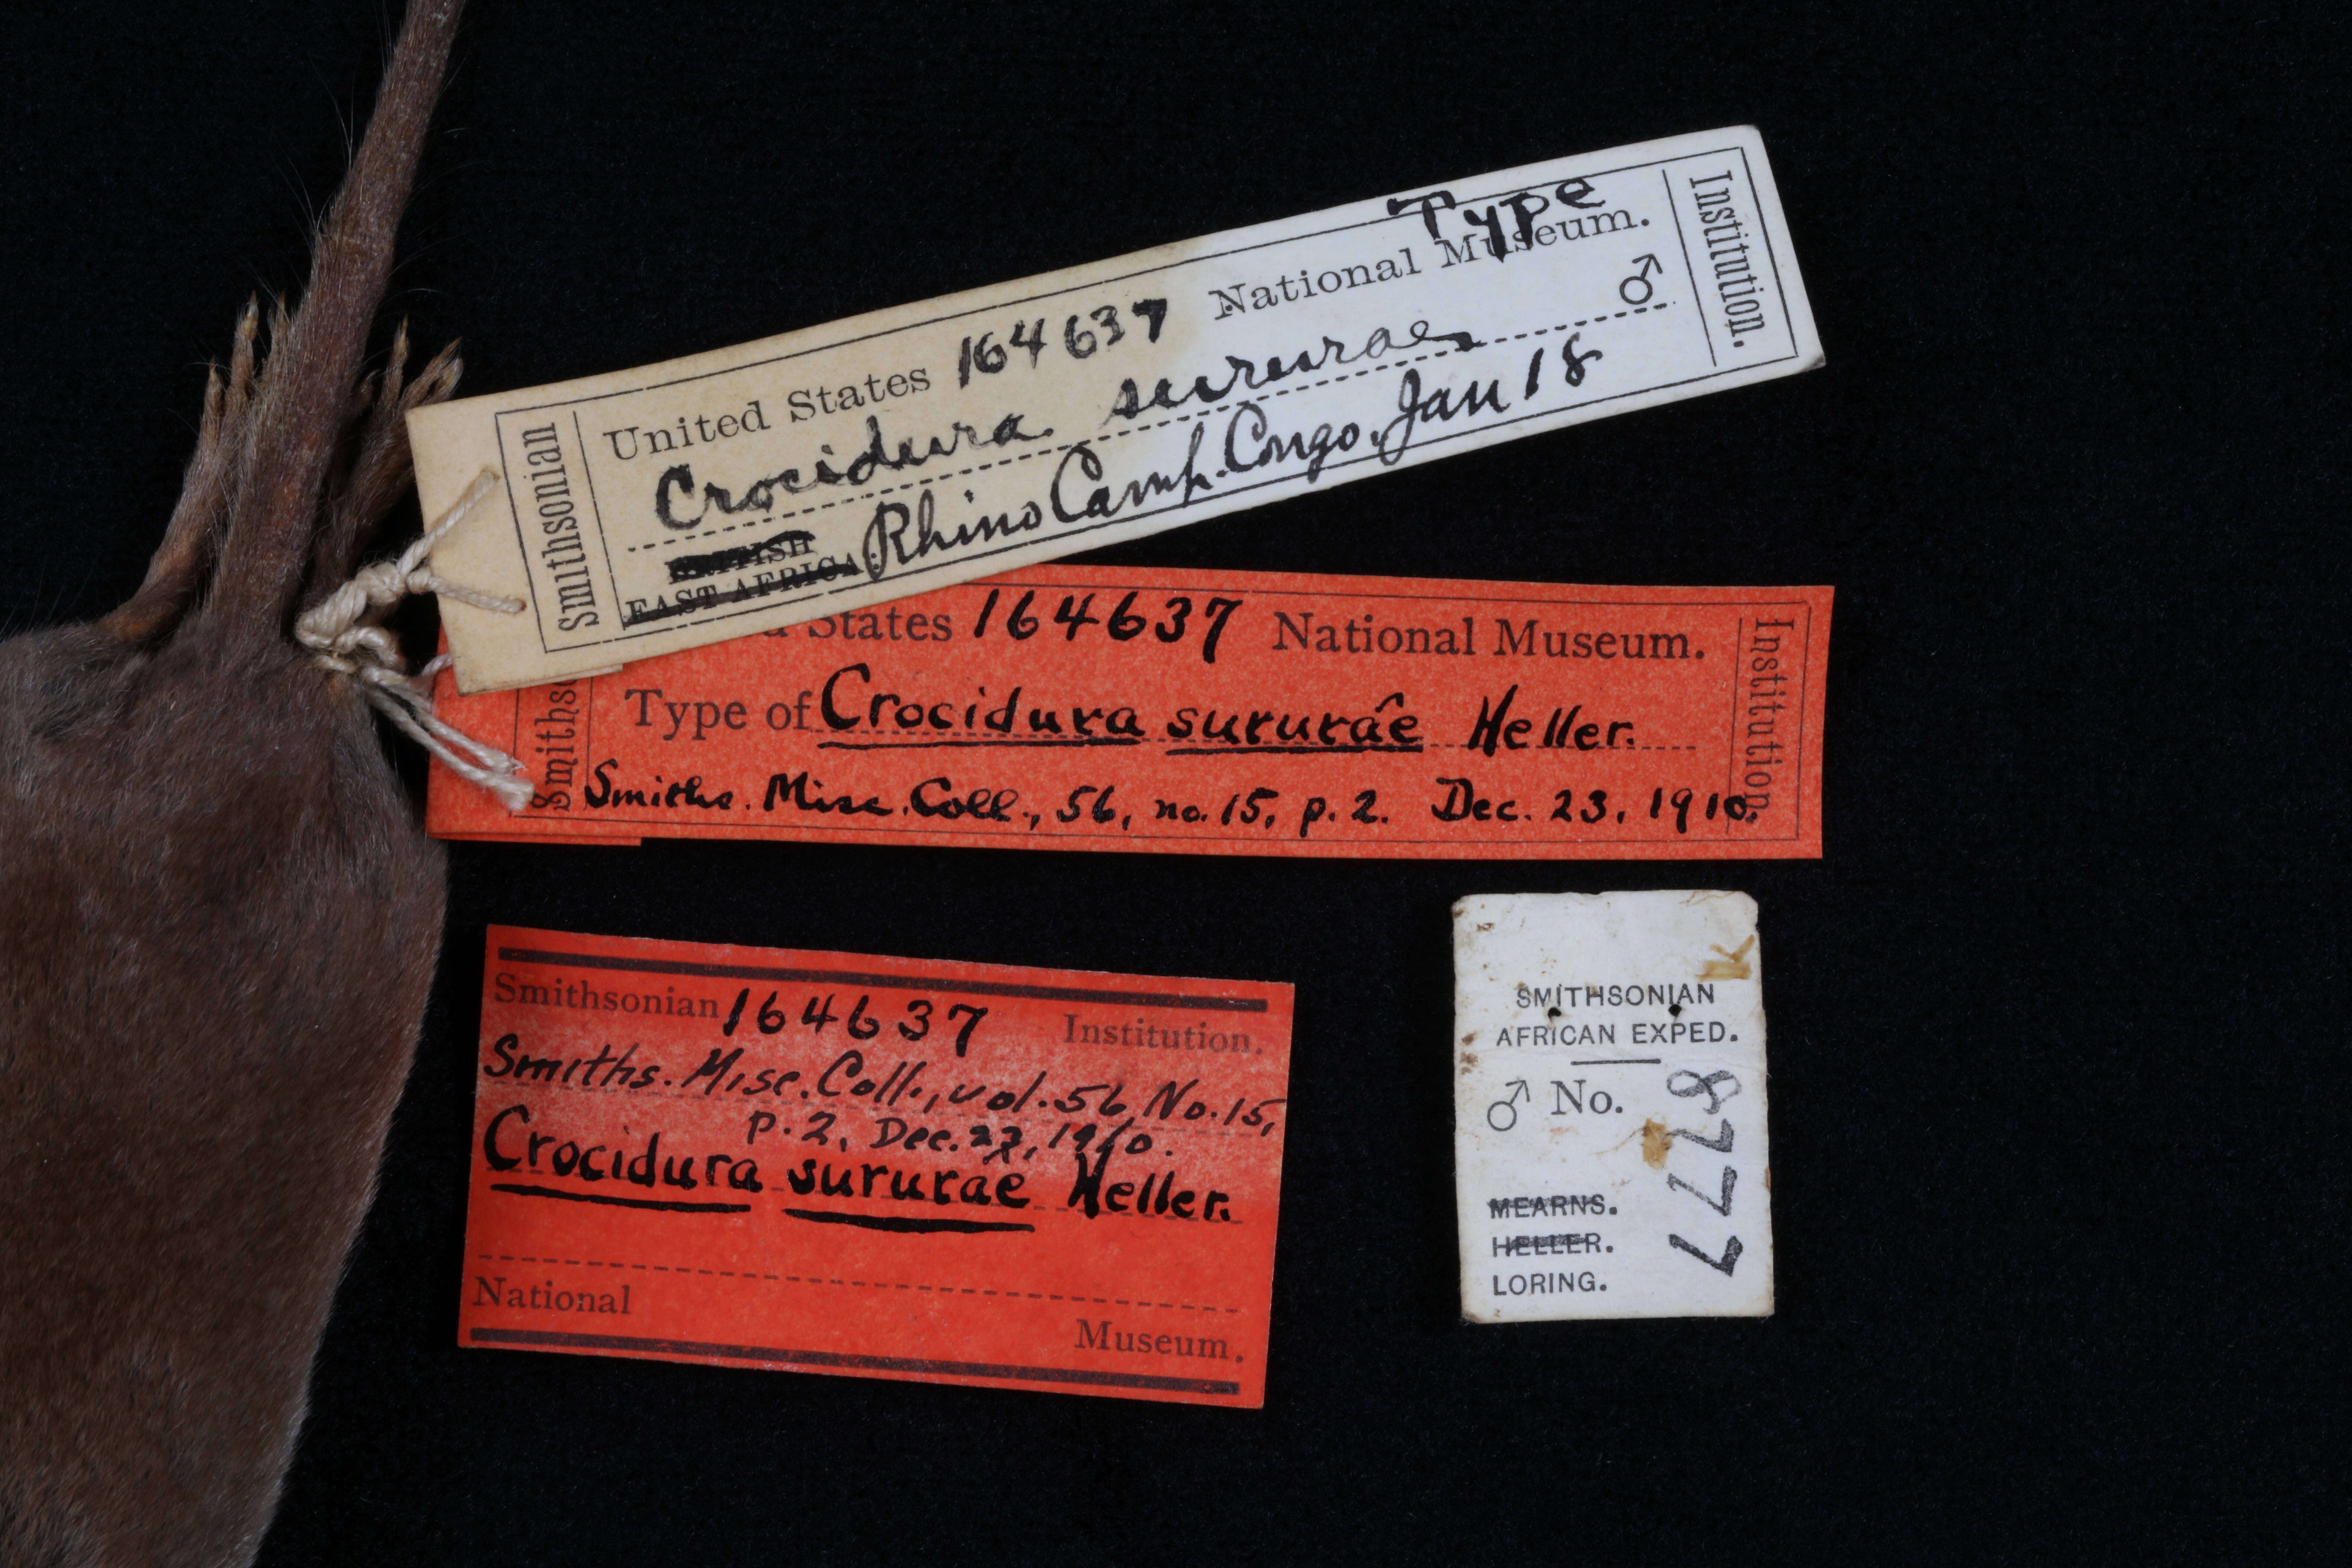 Image of Crocidura olivieri sururae Heller 1910